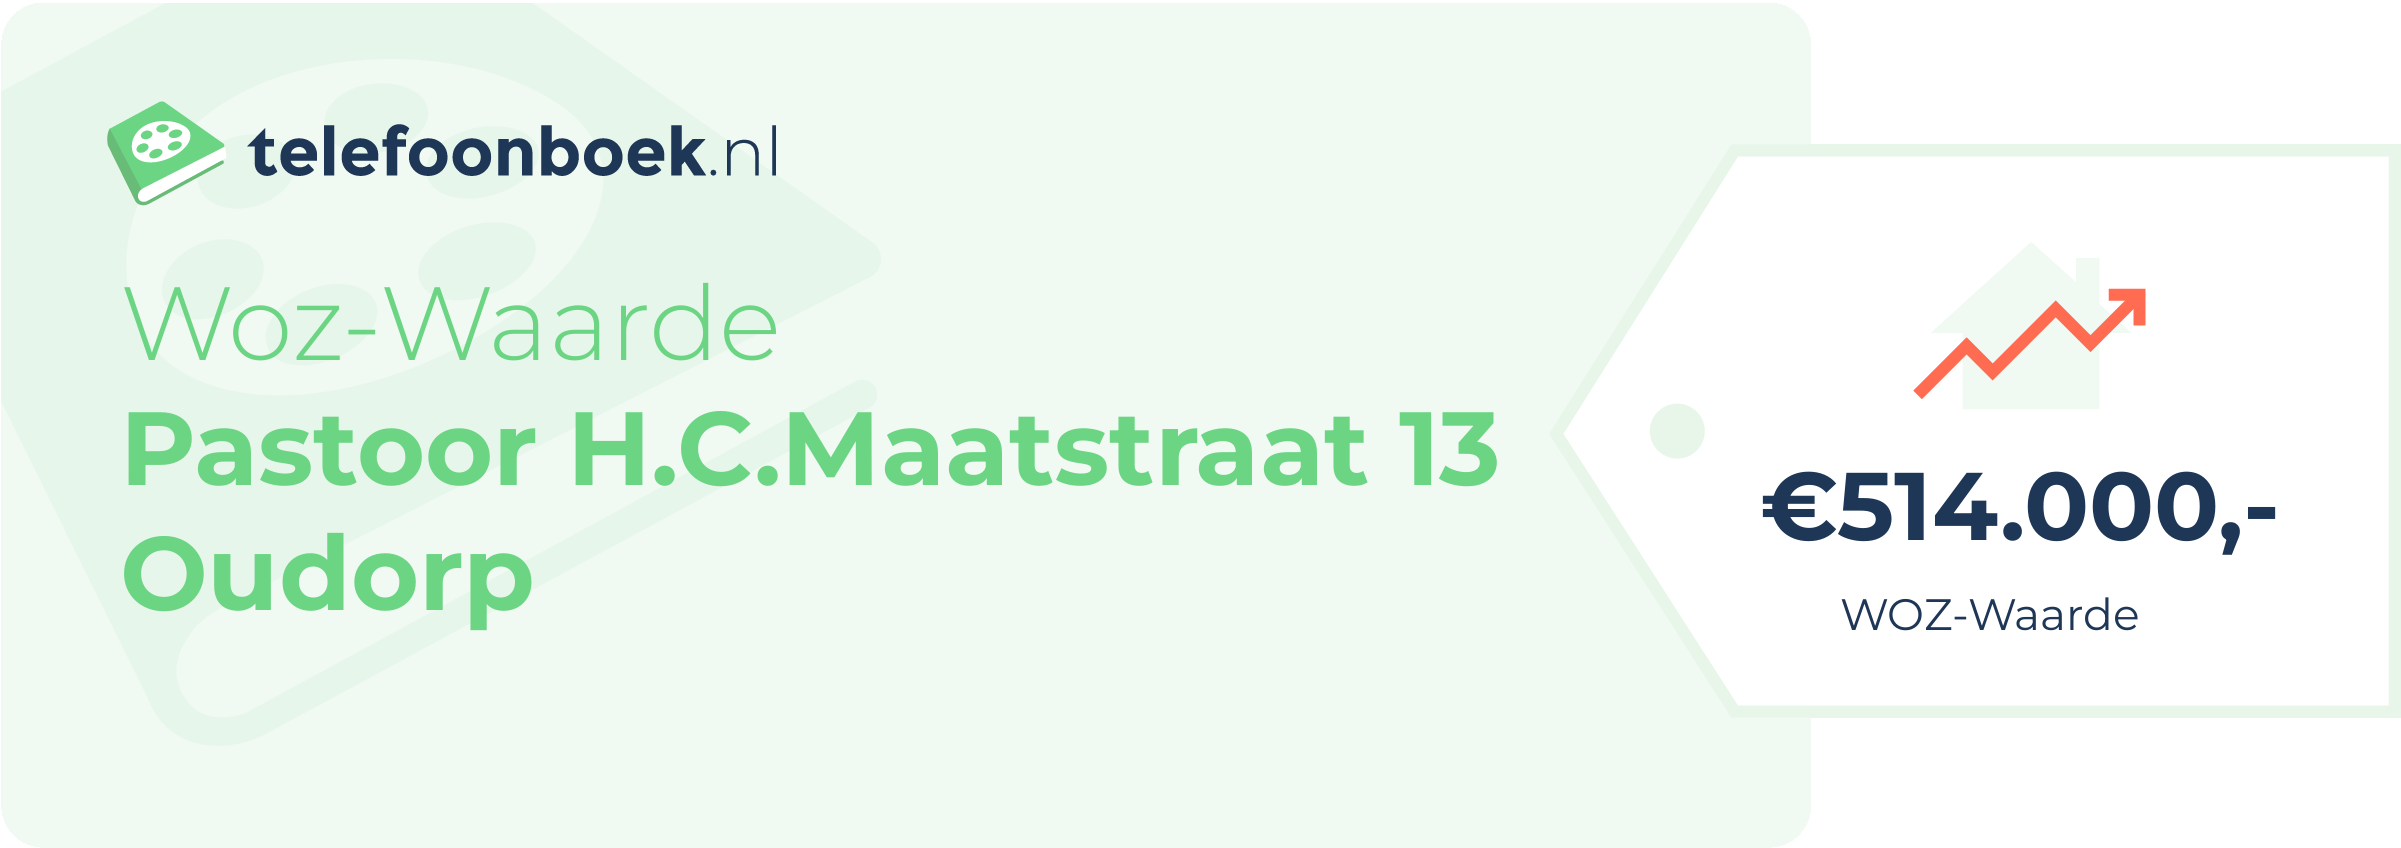 WOZ-waarde Pastoor H.C.Maatstraat 13 Oudorp